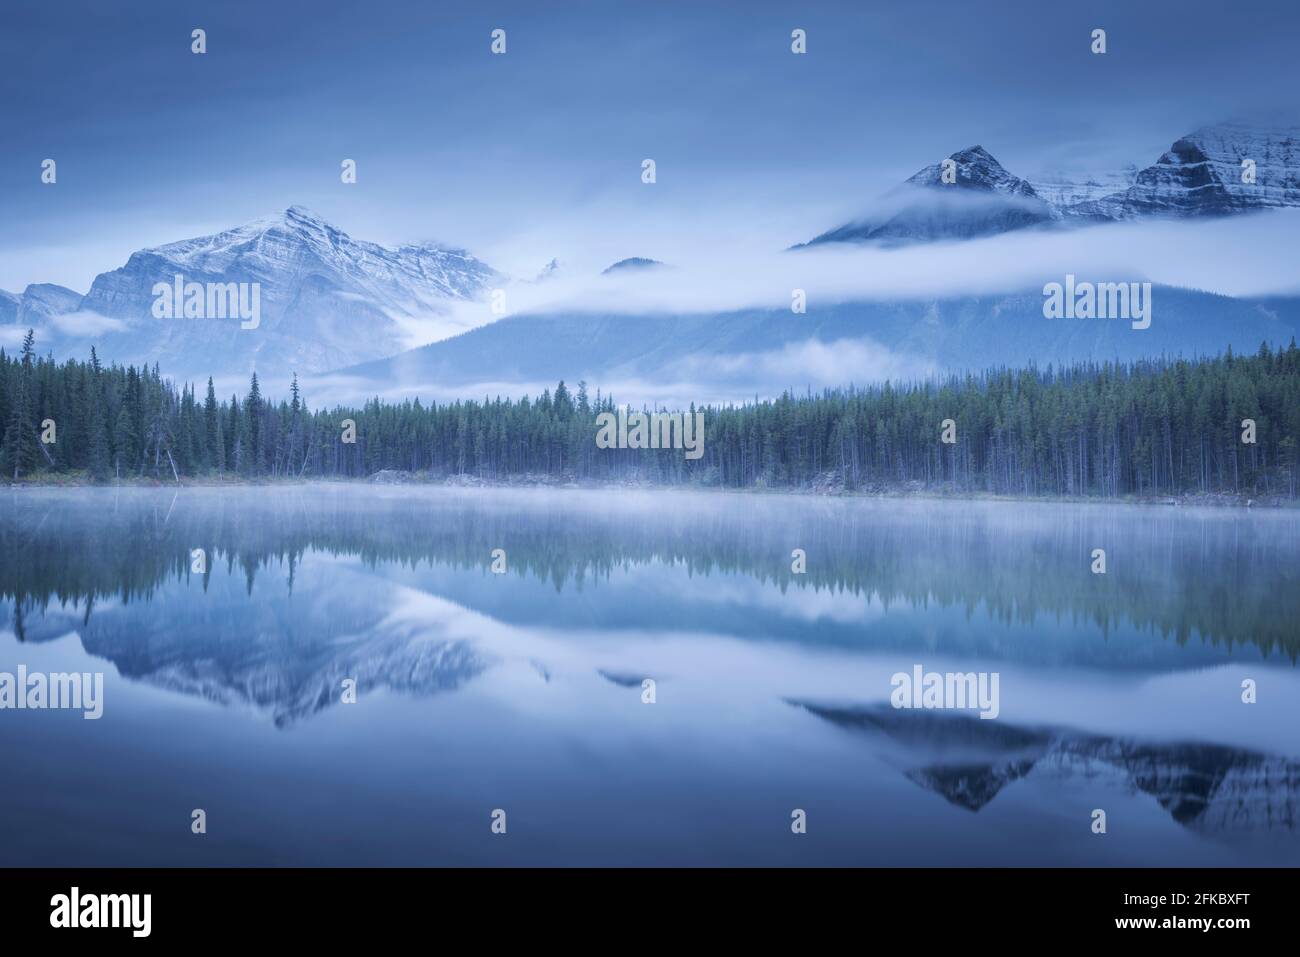 Moody Misty Morning à Herbert Lake dans les Rocheuses canadiennes, parc national Banff, site du patrimoine mondial de l'UNESCO, Alberta, Canada, Amérique du Nord Banque D'Images